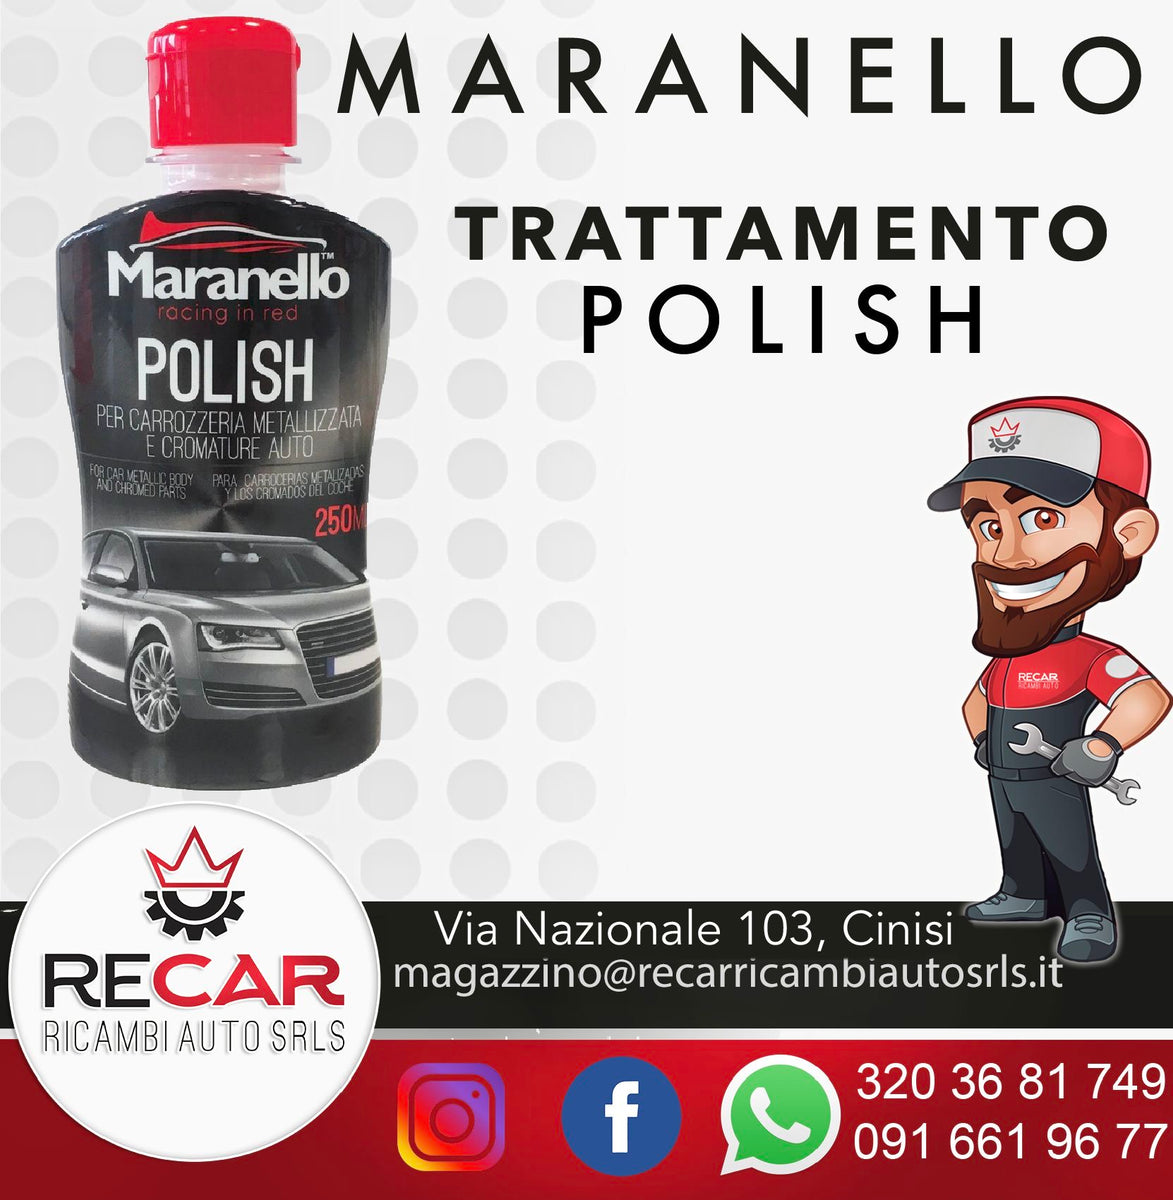 POLISH MARANELLO – RECAR RICAMBI AUTO SRL